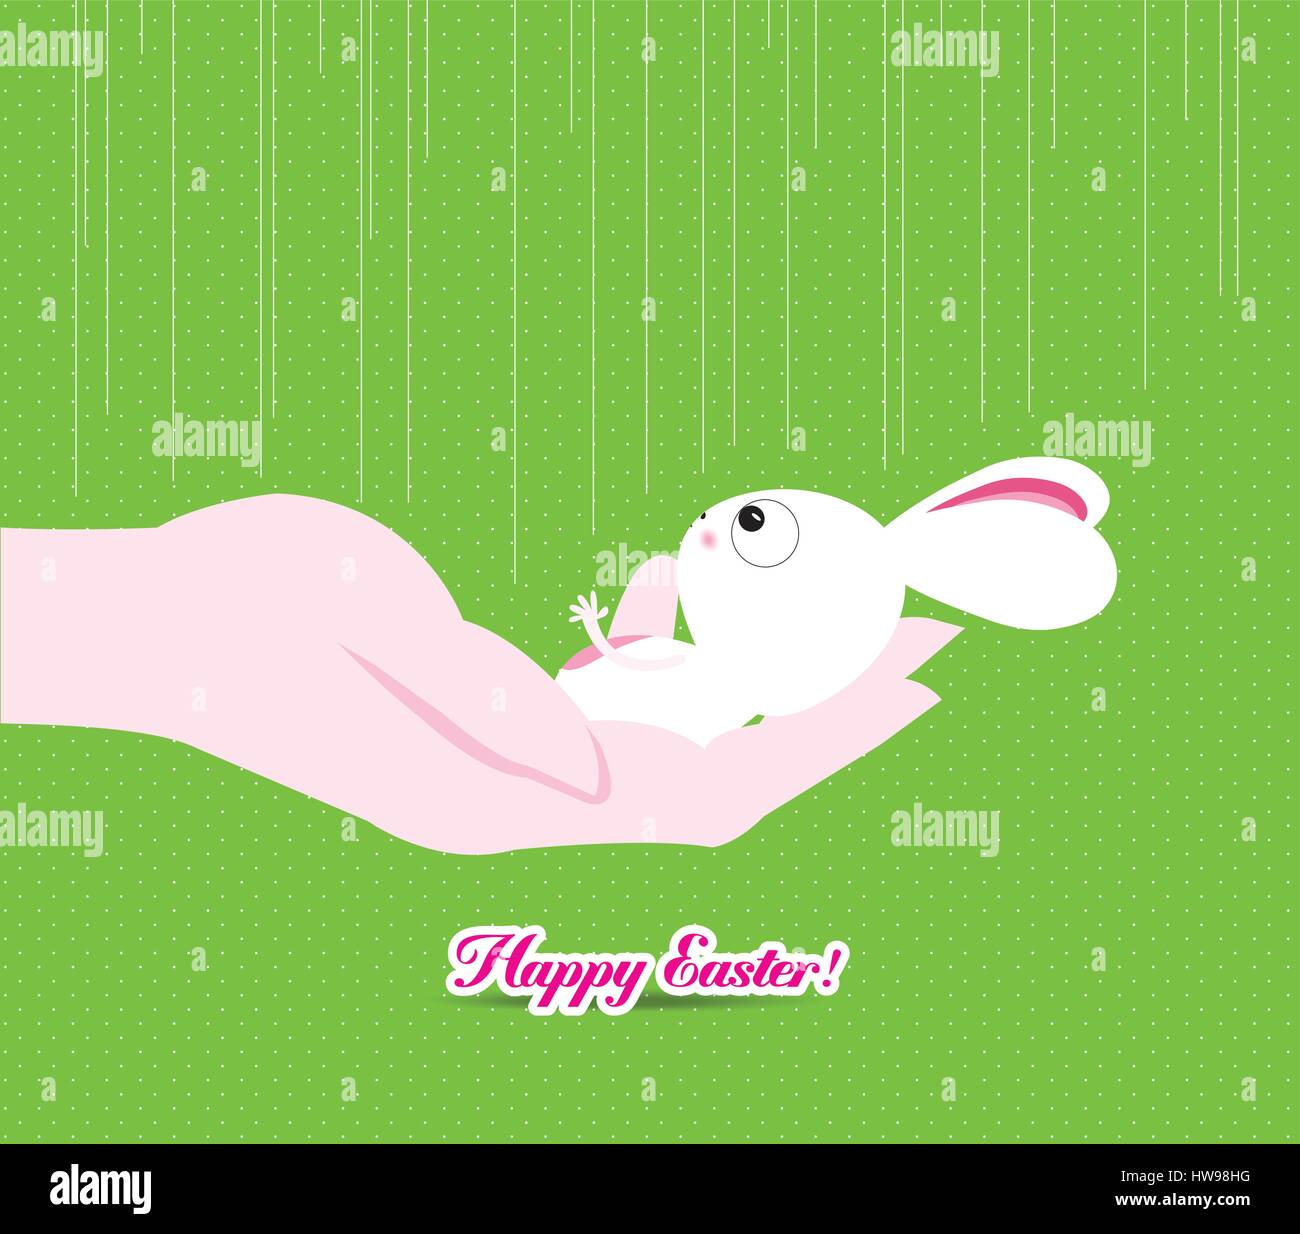 Joyeuses pâques main tenant une petite bunny Illustration de Vecteur